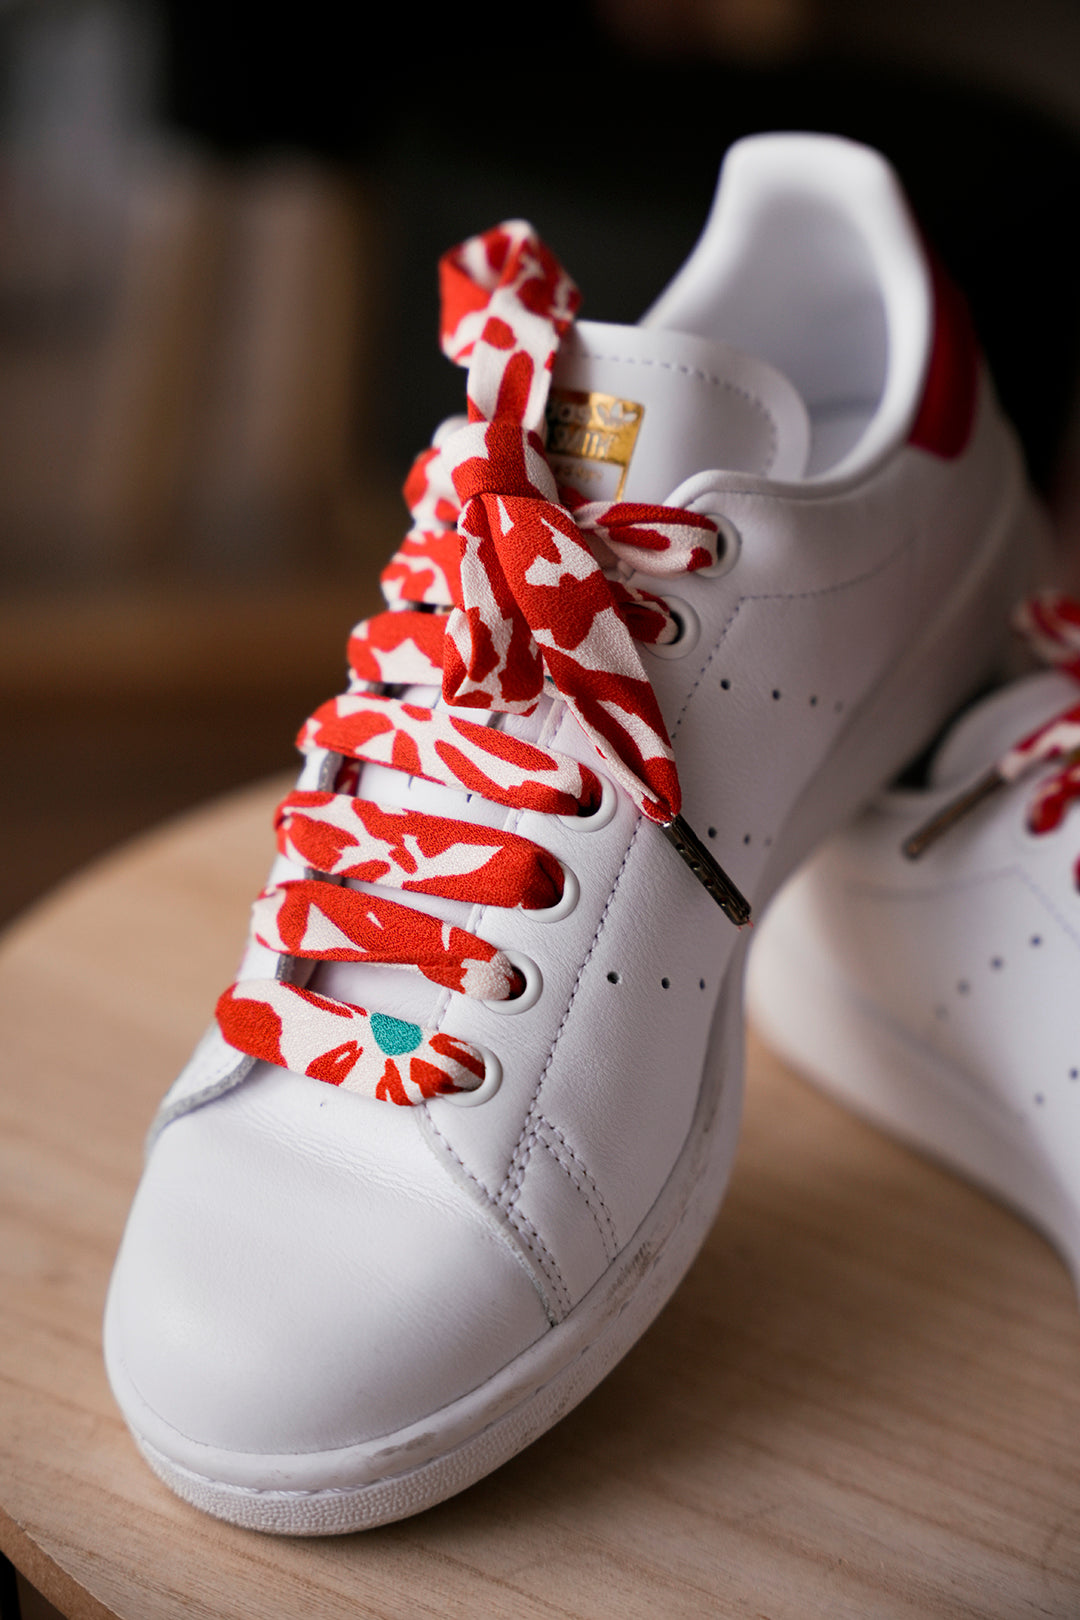 Lacets rouges fleuris - Lacets originaux chaussures | Mon Lacet Français